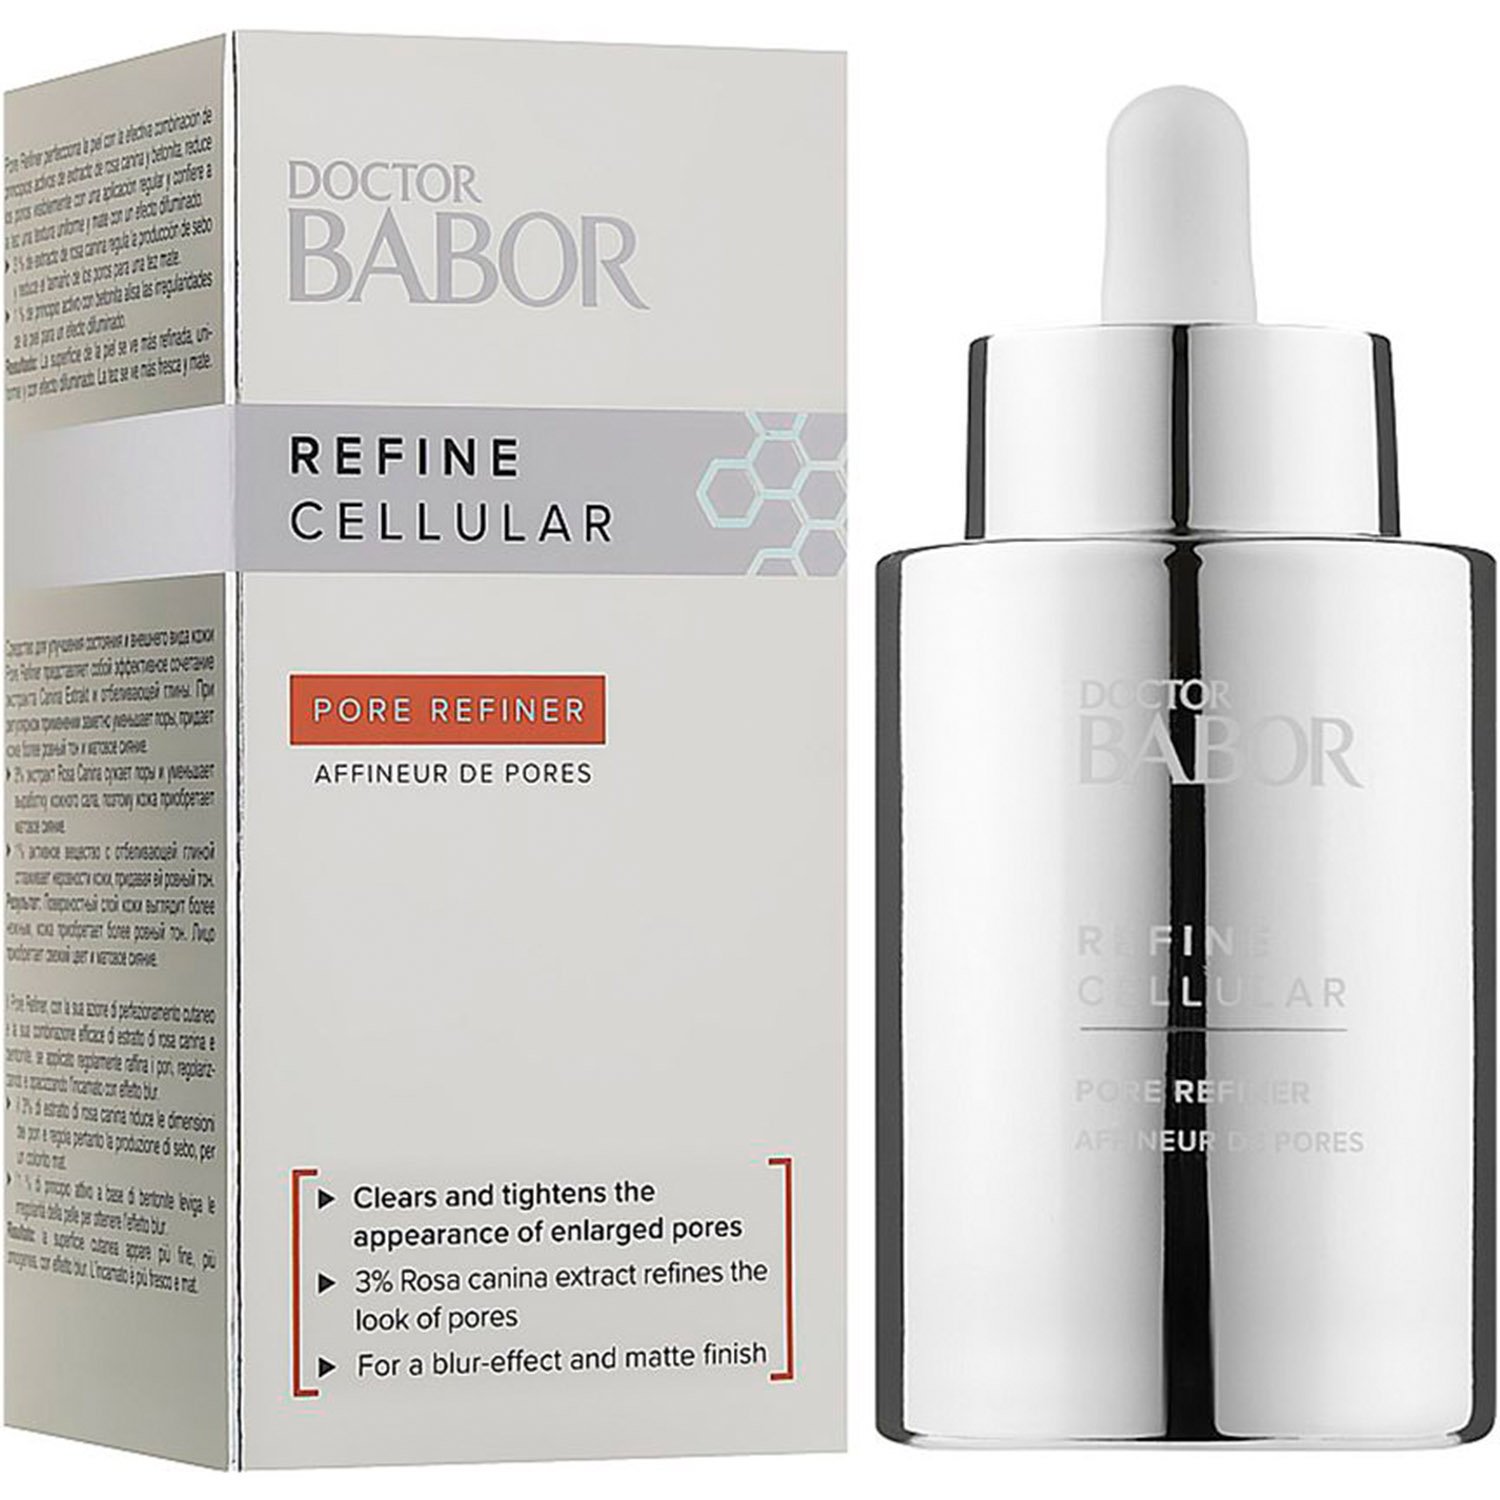 Сыворотка Babor Doctor Babor Refine Cellular Pore Refiner для усовершенствования кожи лица, 50 мл - фото 1